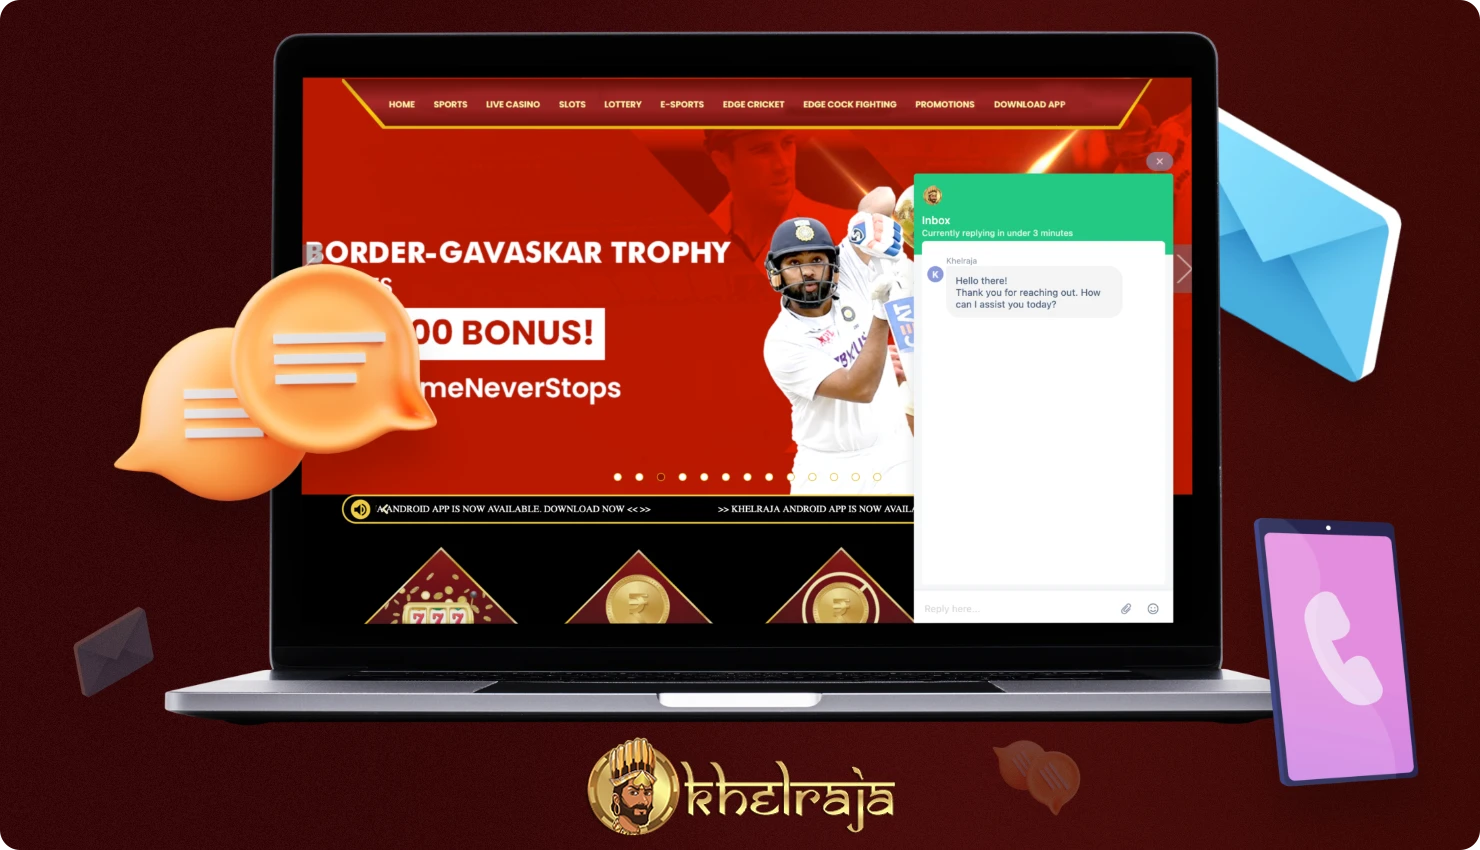 भारत में Khelraja की सहायता टीम से संपर्क करने के लिए, आप ऑनलाइन चैट सहित विभिन्न प्रकार के फ़ीडबैक विकल्पों का उपयोग कर सकते हैं